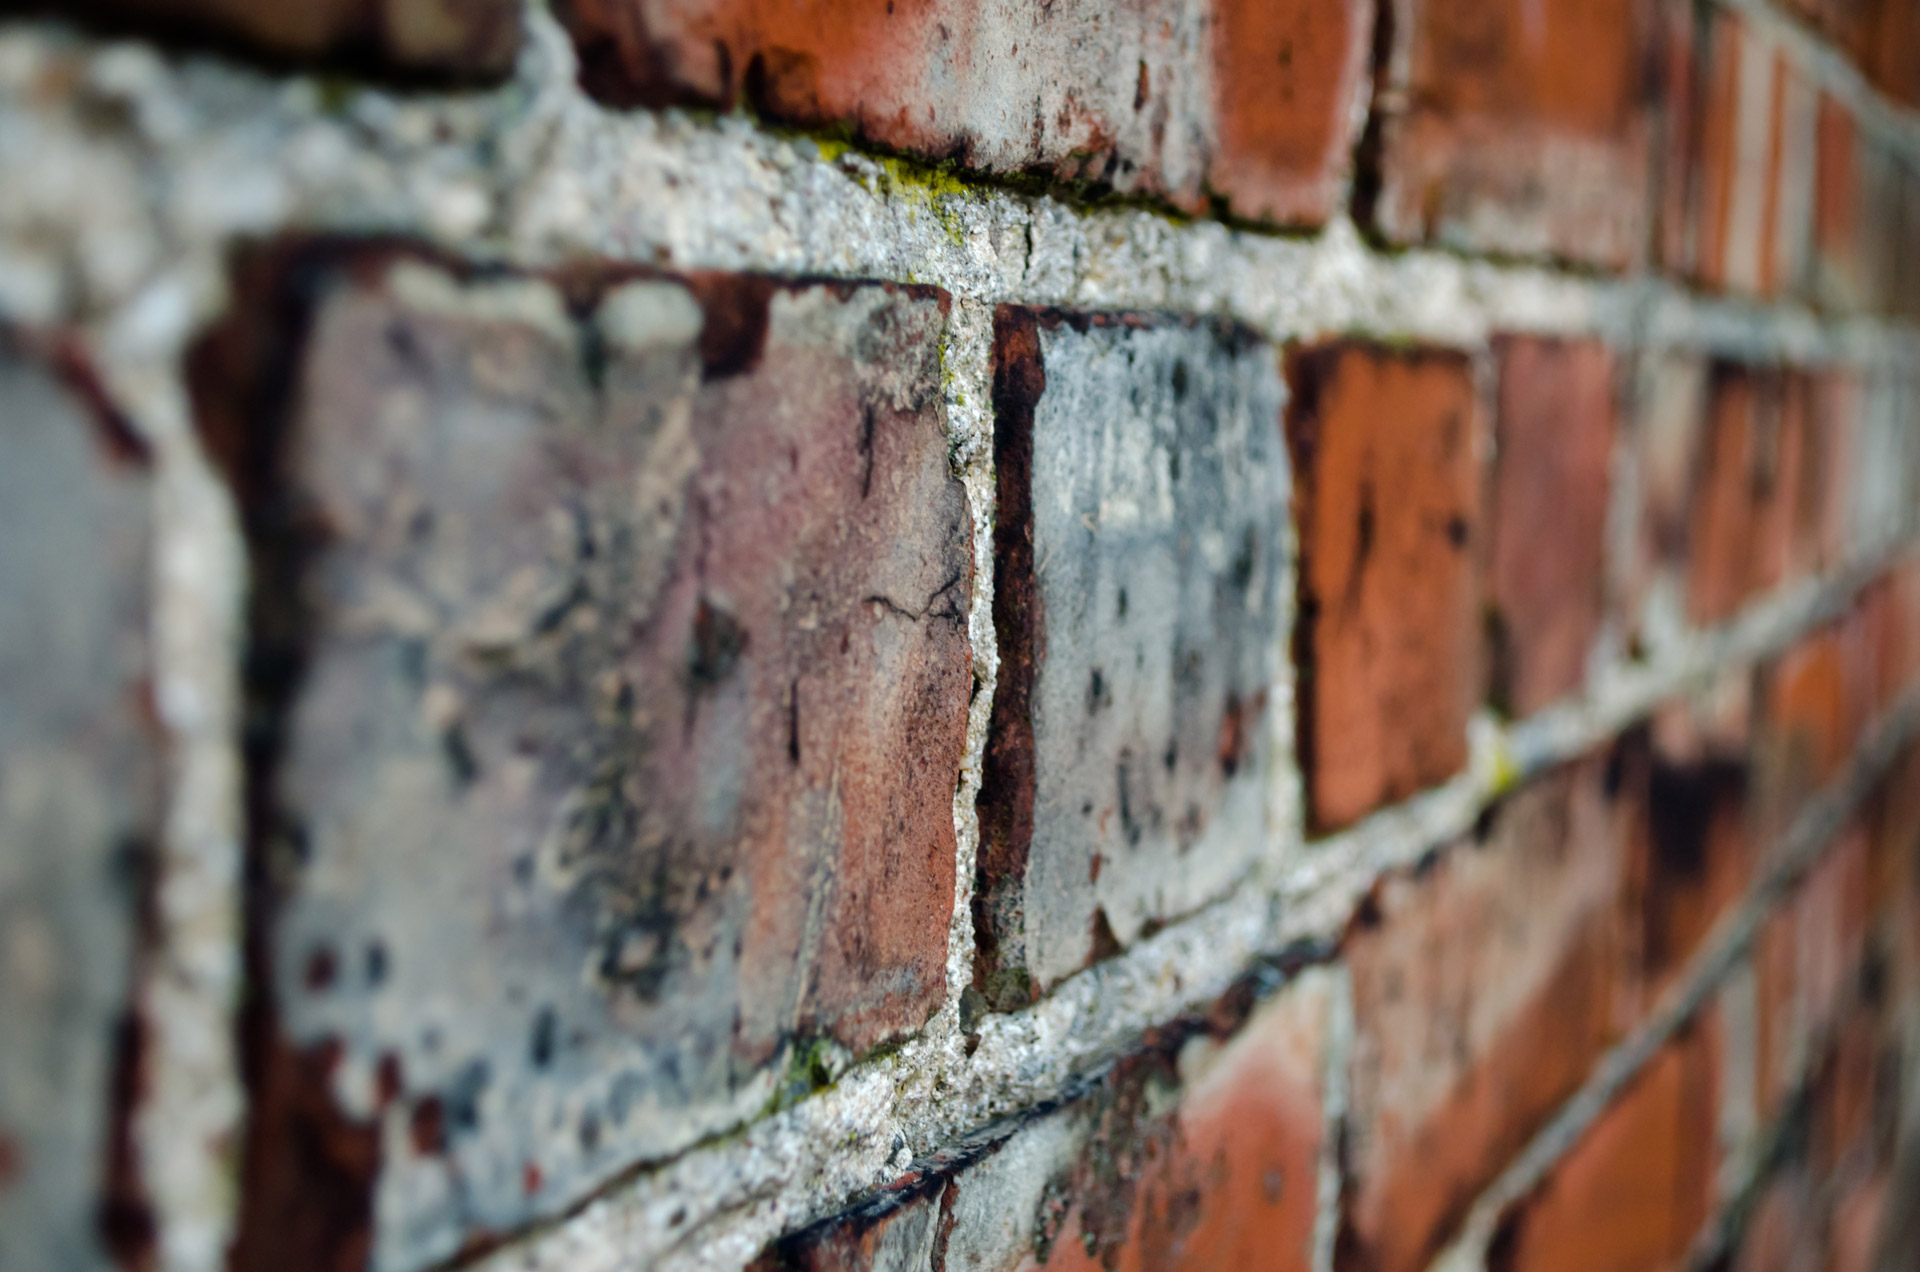 brick wall architecture free photo